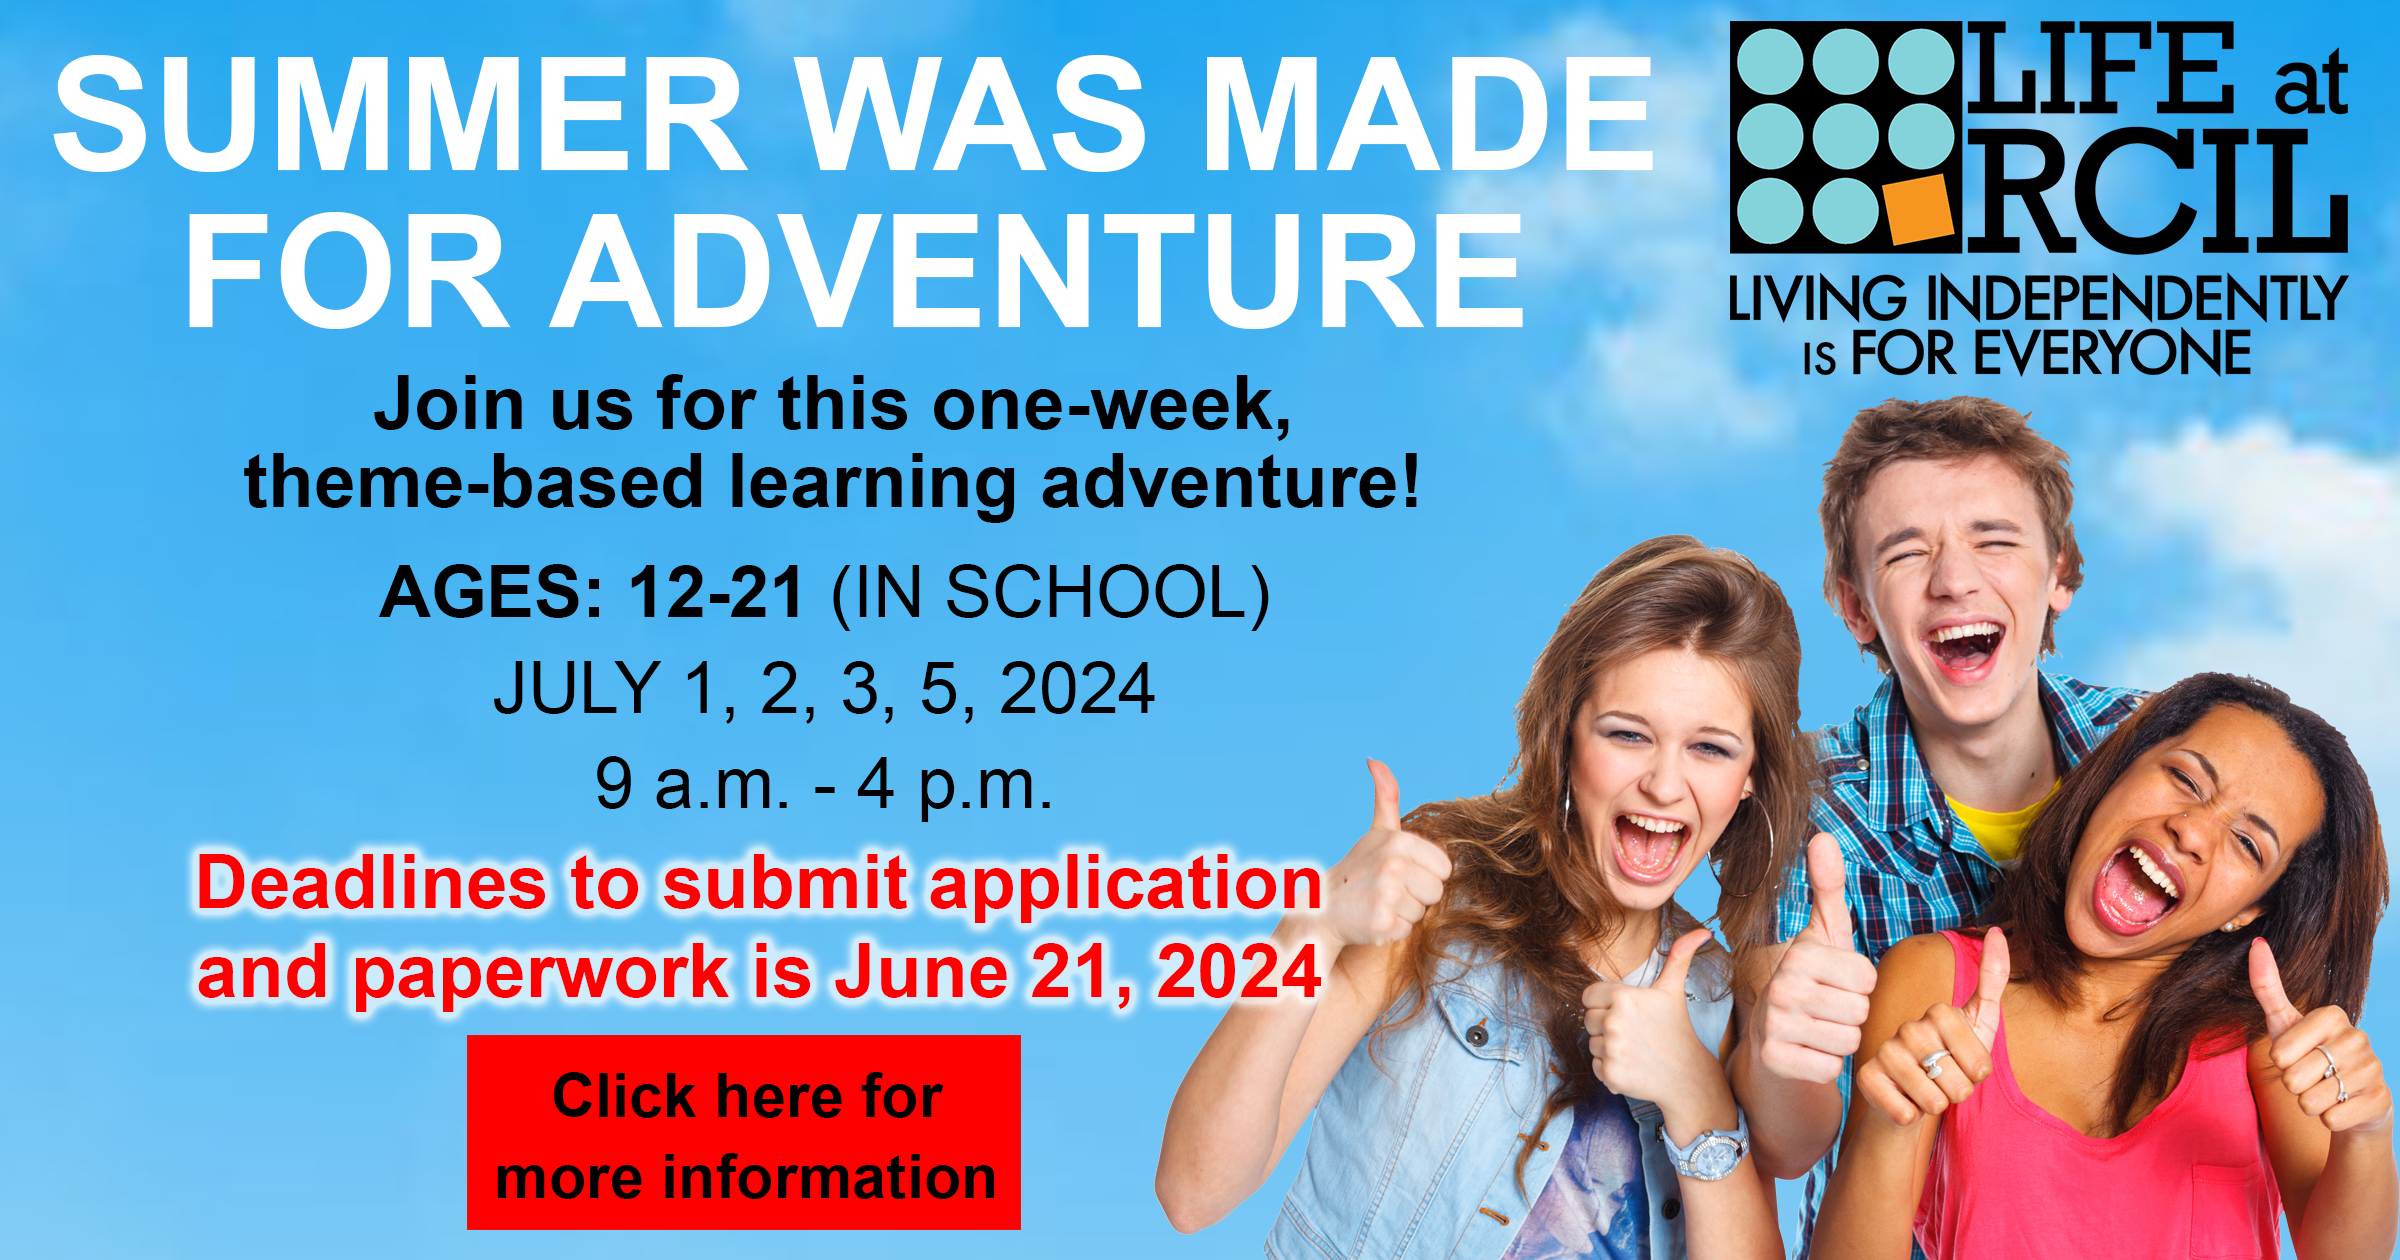 Summer adventure challenge info card